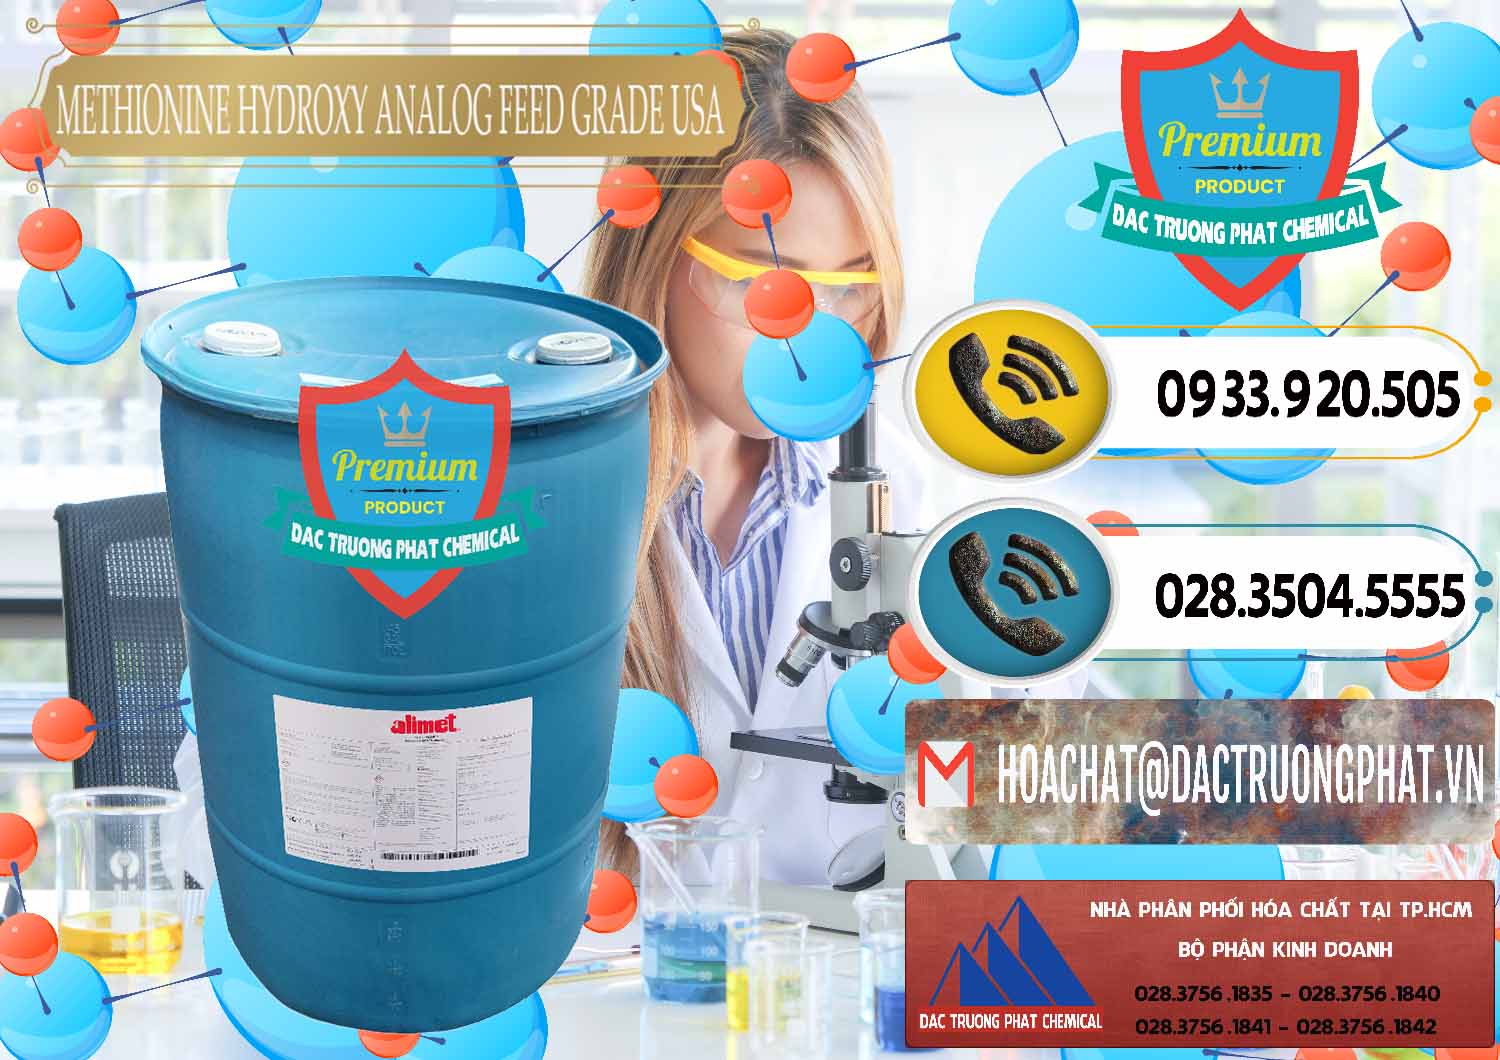 Cung cấp và bán Methionine Nước - Dạng Lỏng Novus Alimet Mỹ USA - 0316 - Nơi cung cấp - phân phối hóa chất tại TP.HCM - hoachatdetnhuom.vn